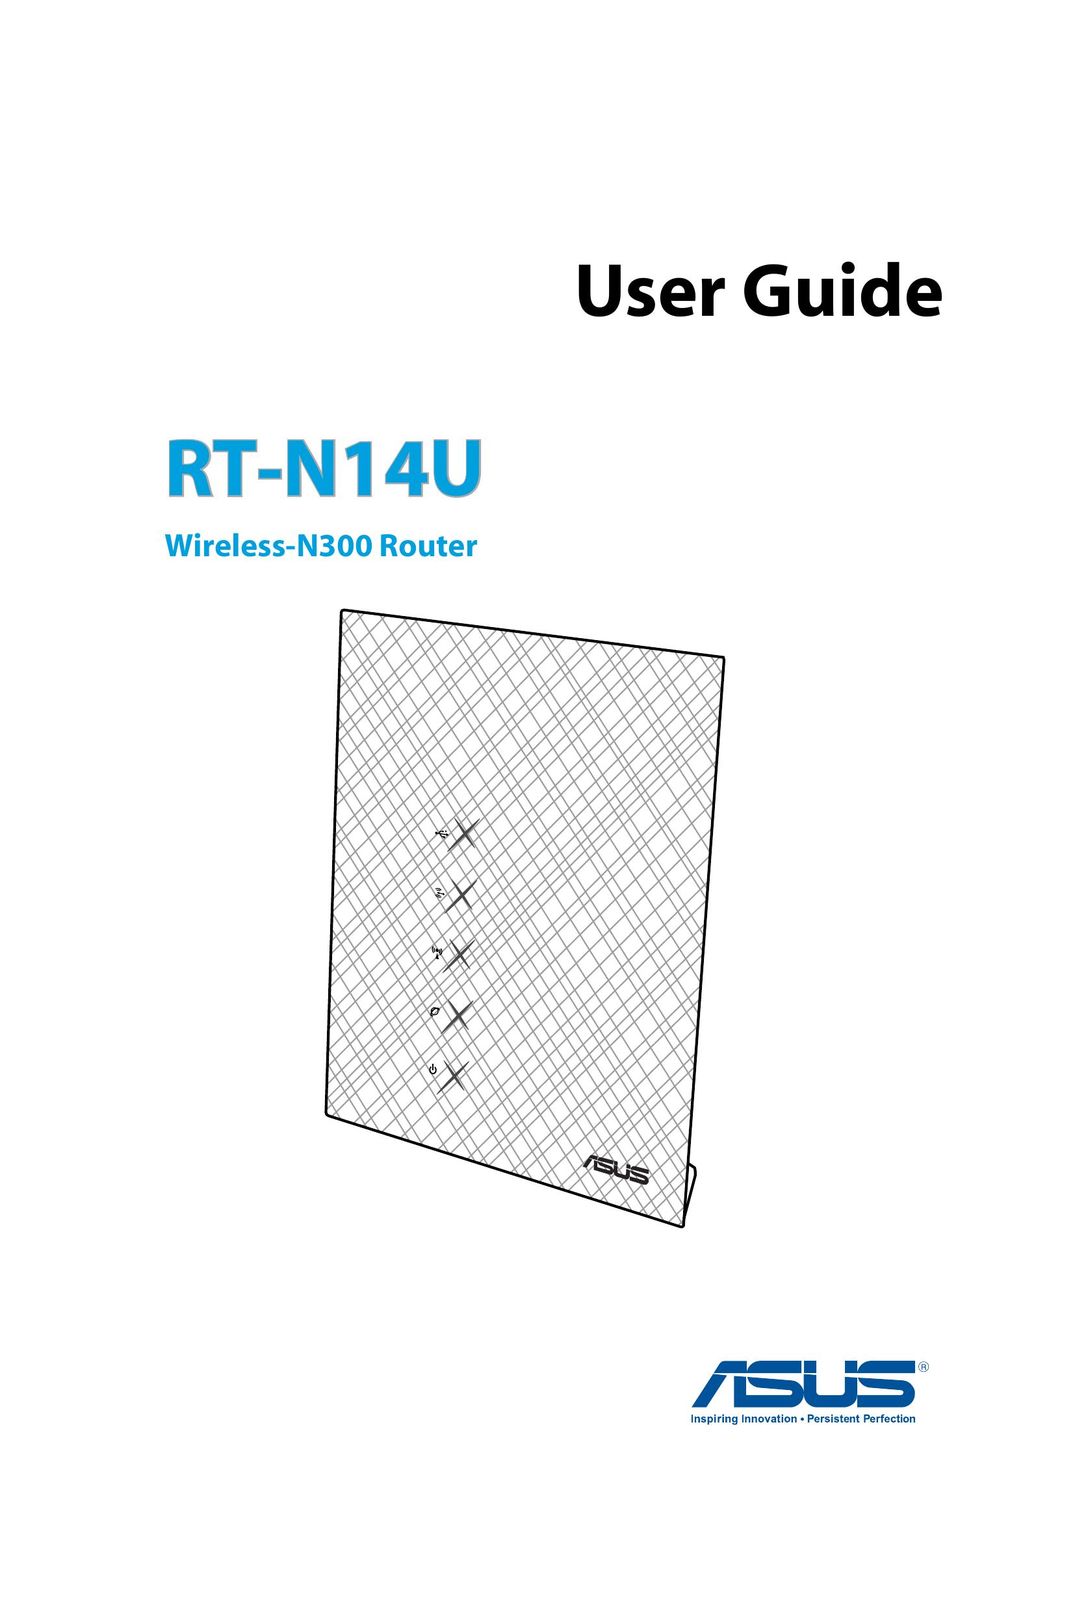 Asus RT-N14U Network Router User Manual